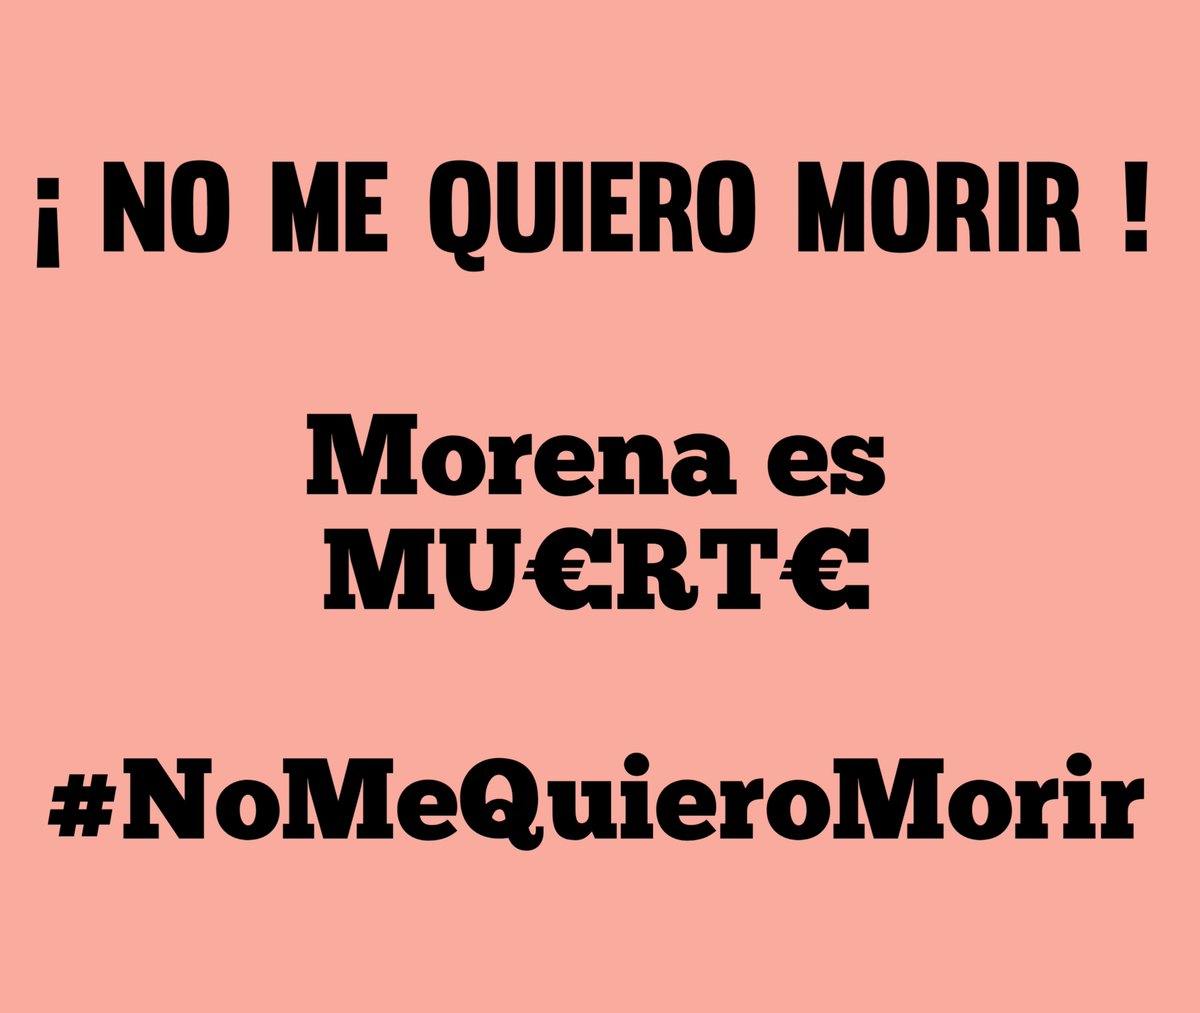 💥 ATENCIÓN 💥

▪️Fanáticos de la secta de Morena y la 4T.

▪️Y adoradores de López Obrador.

No lamenten la MU€RT€ del niño Emiliano mientras apoyan a un gobierno que no le dió seguridad ni atención médica.

Ustedes son CÓMPLICES.

#NoMeQuieroMorir